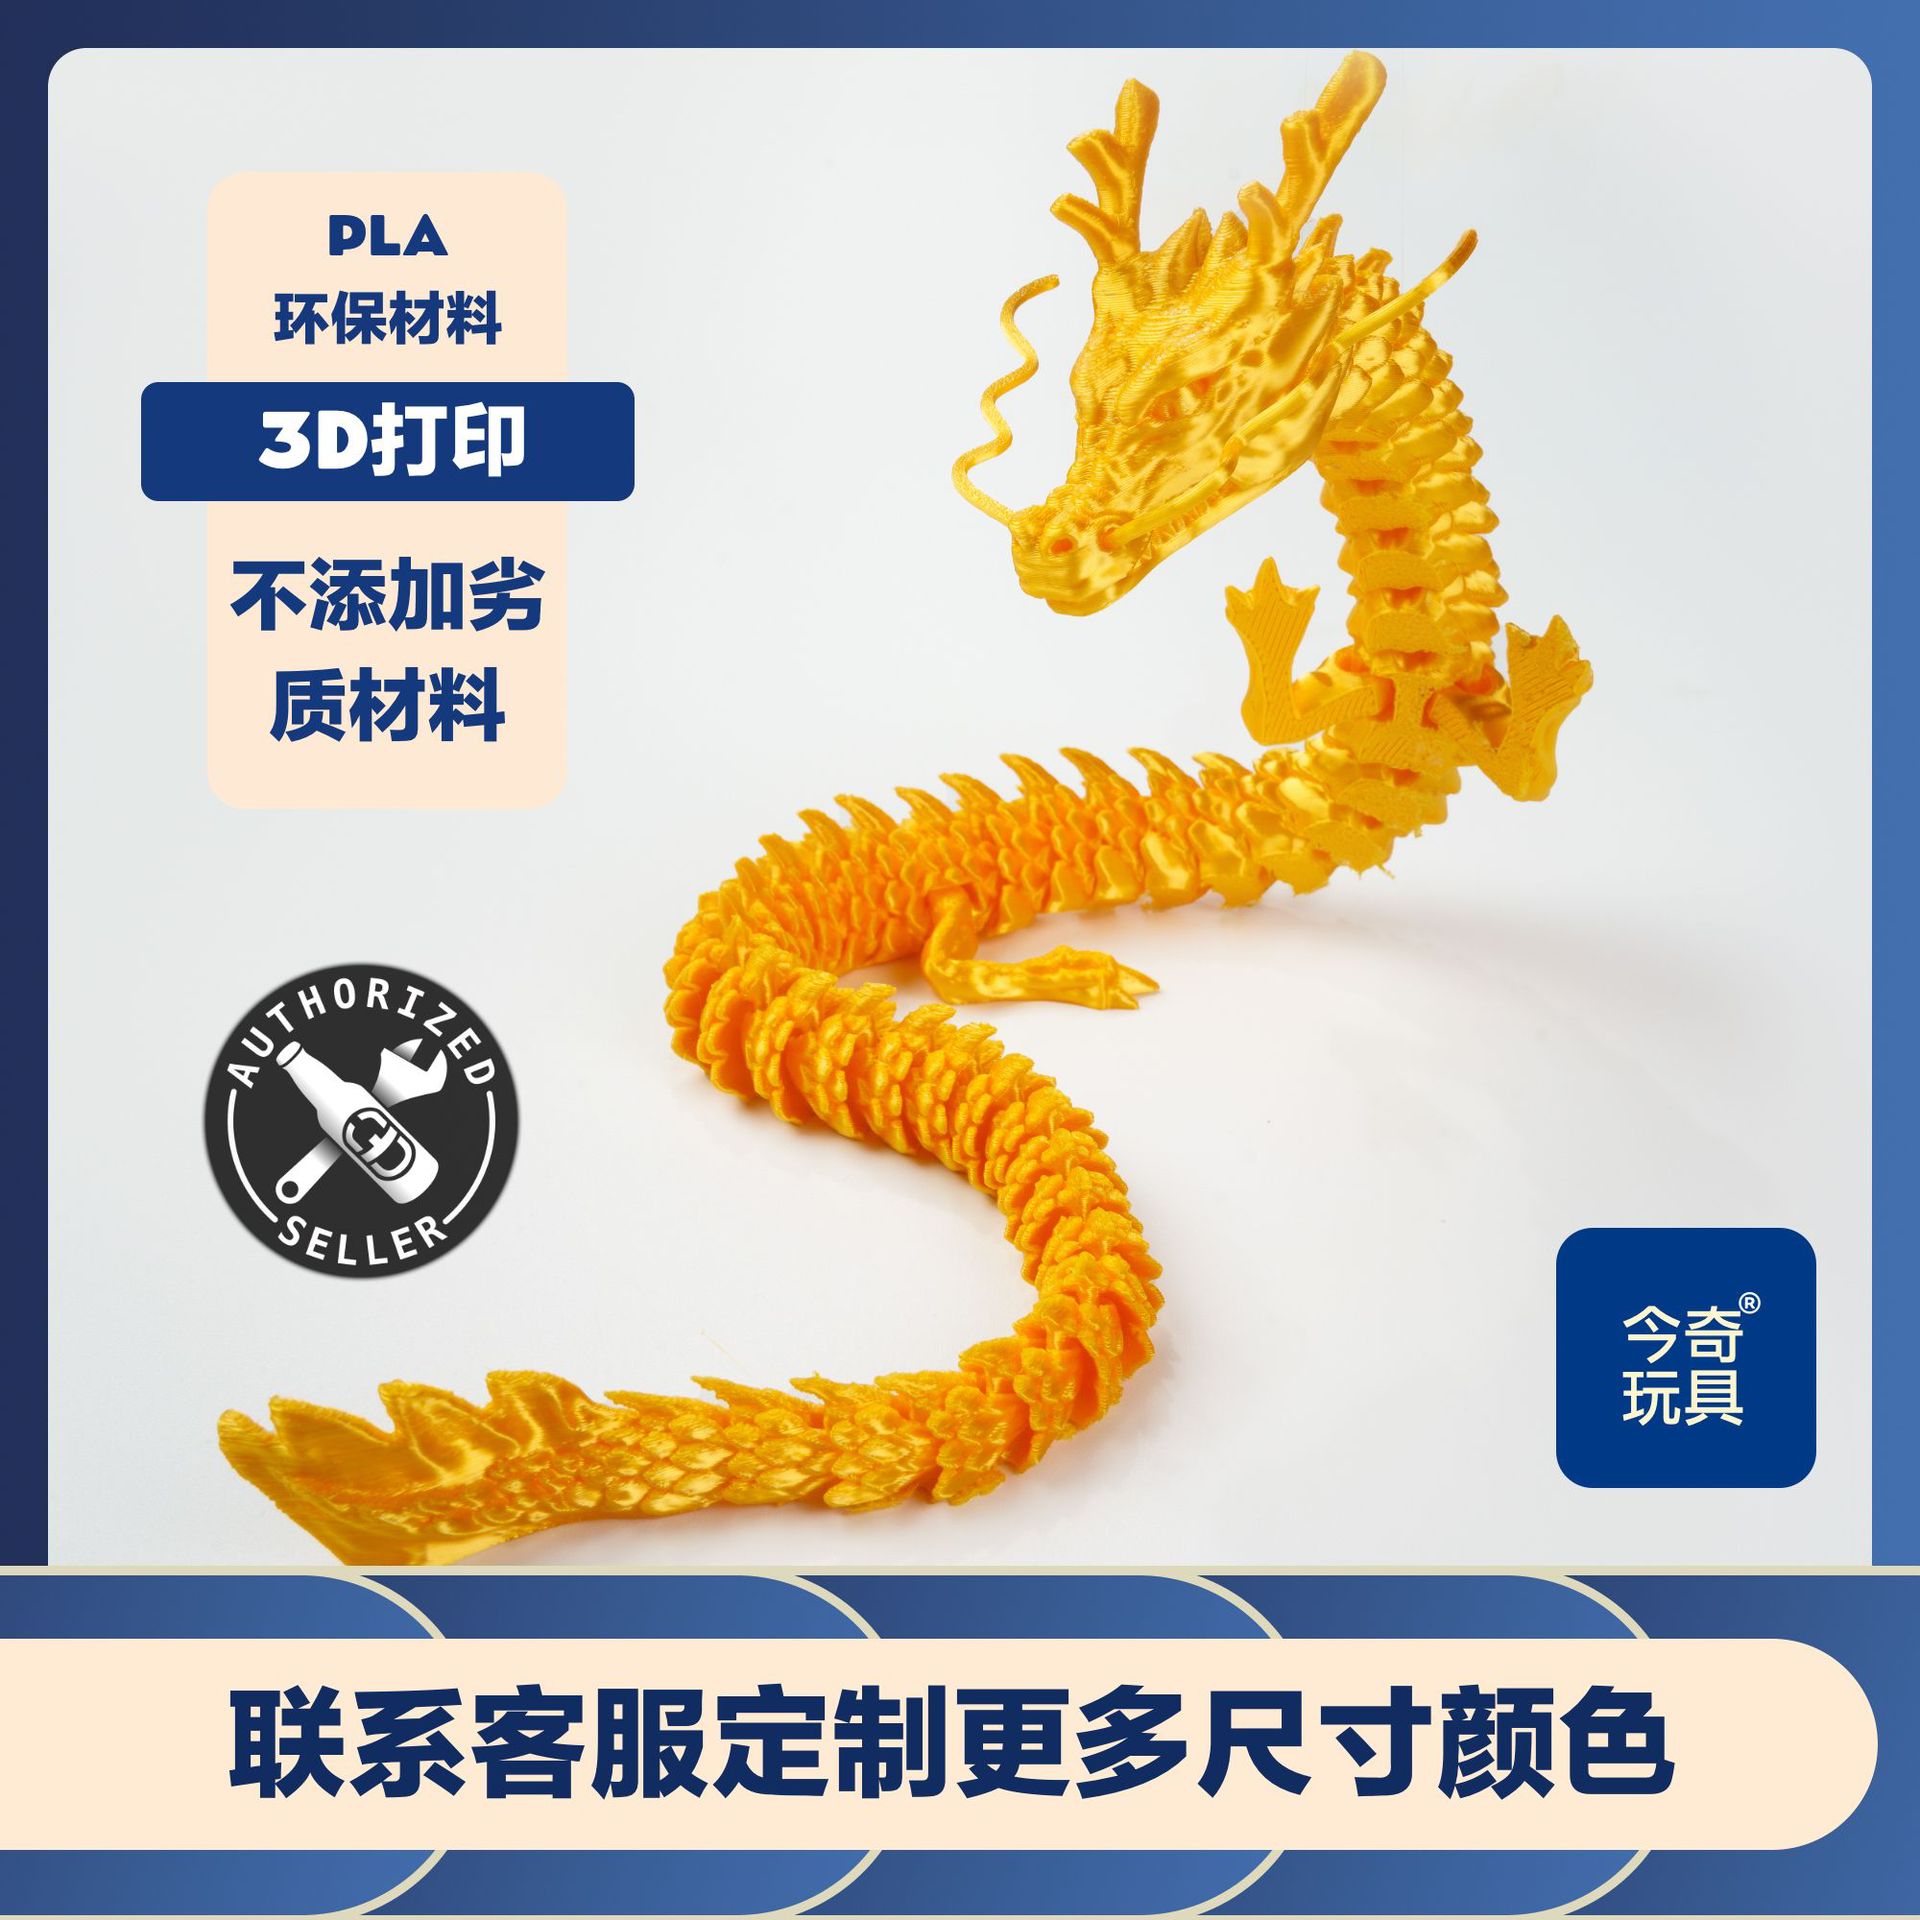 3D打印中国龙神龙工艺品摆件礼物网红创意手办汽车摆件厂家手办